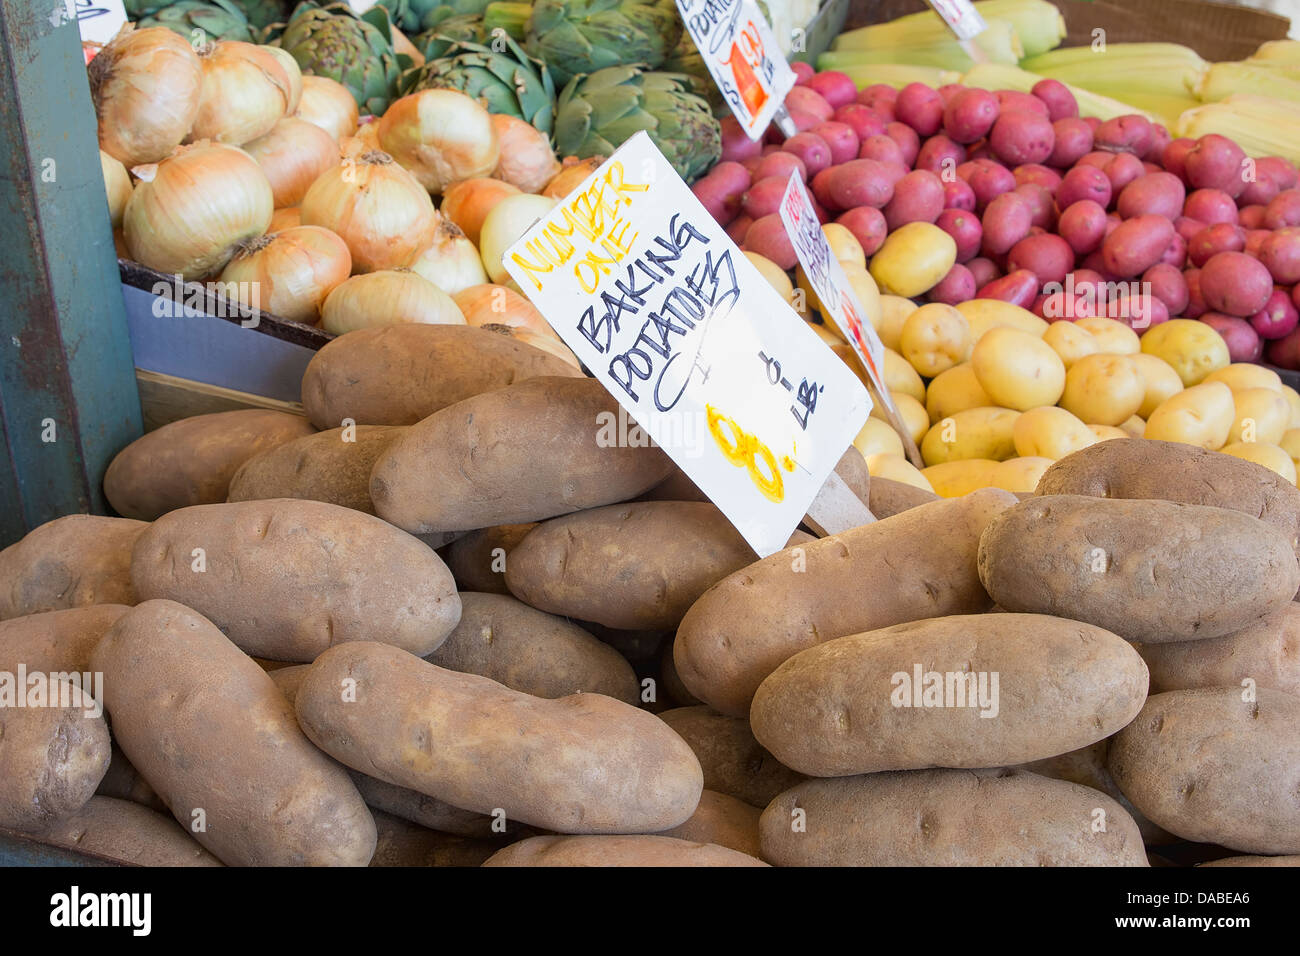 Backen Kartoffeln Zwiebeln Artischocken Gemüse Stall Display mit Zeichen am Bauernmarkt Stockfoto